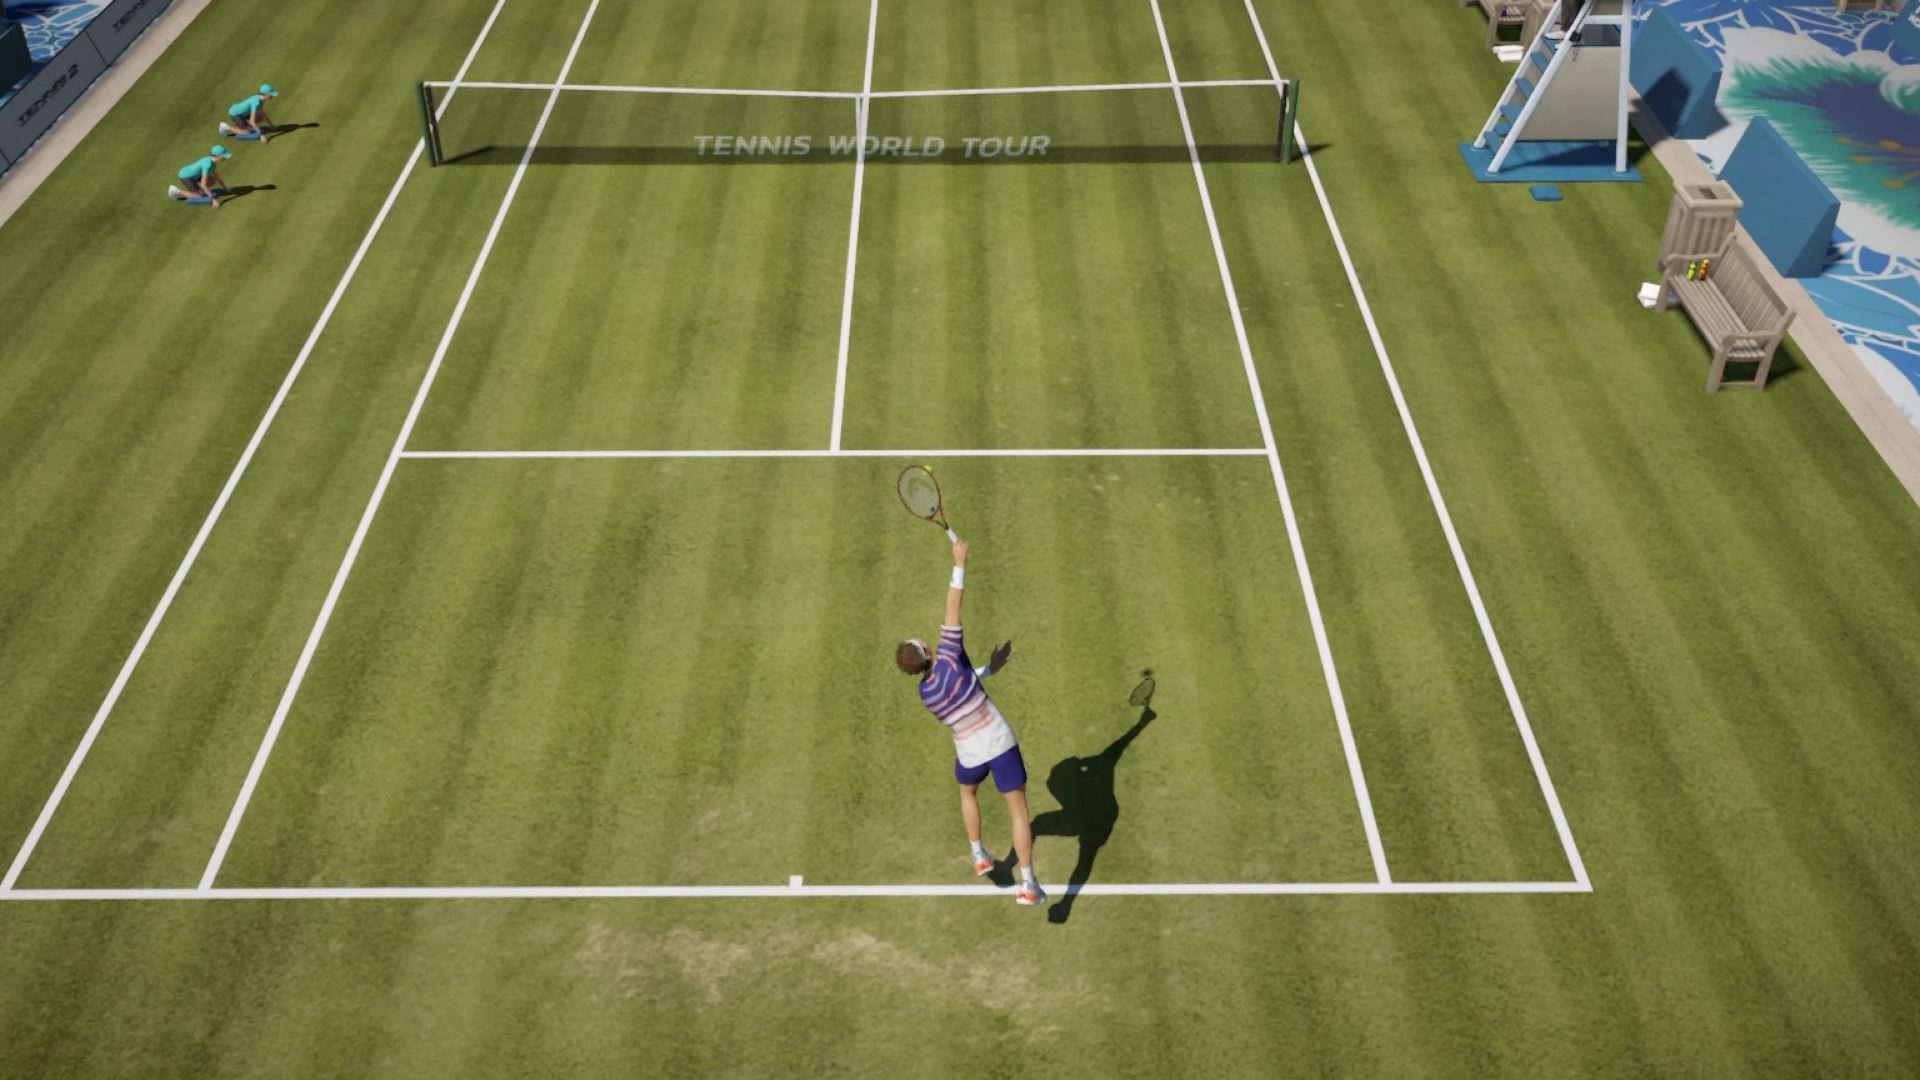 Tennis World Tour 2 oynanış videosu yayınlandı